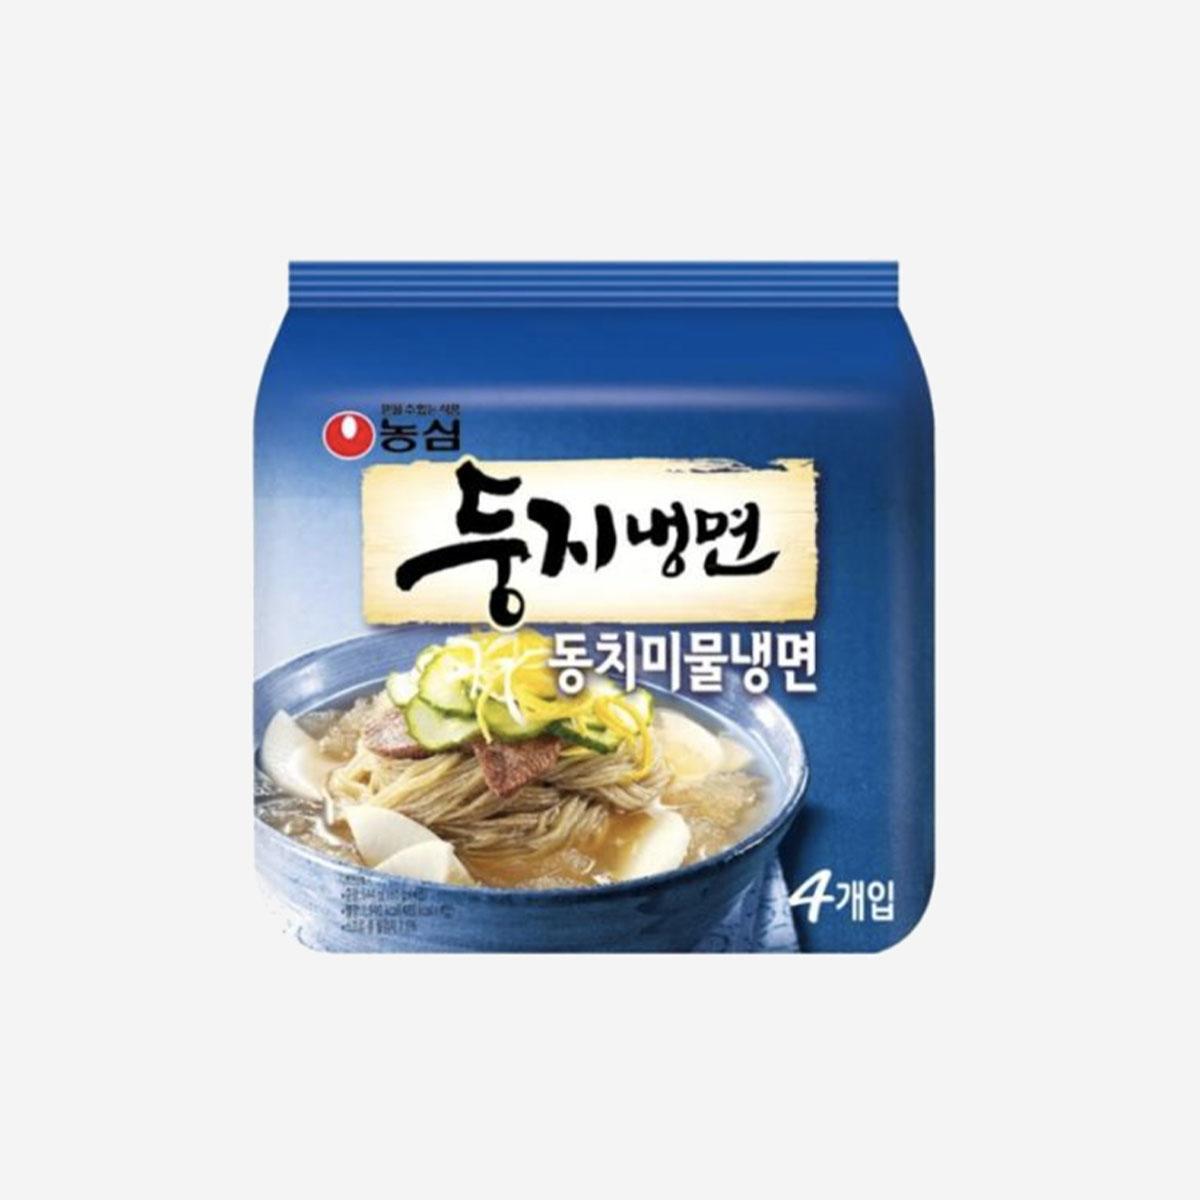 Cold Noodles (4 packs)